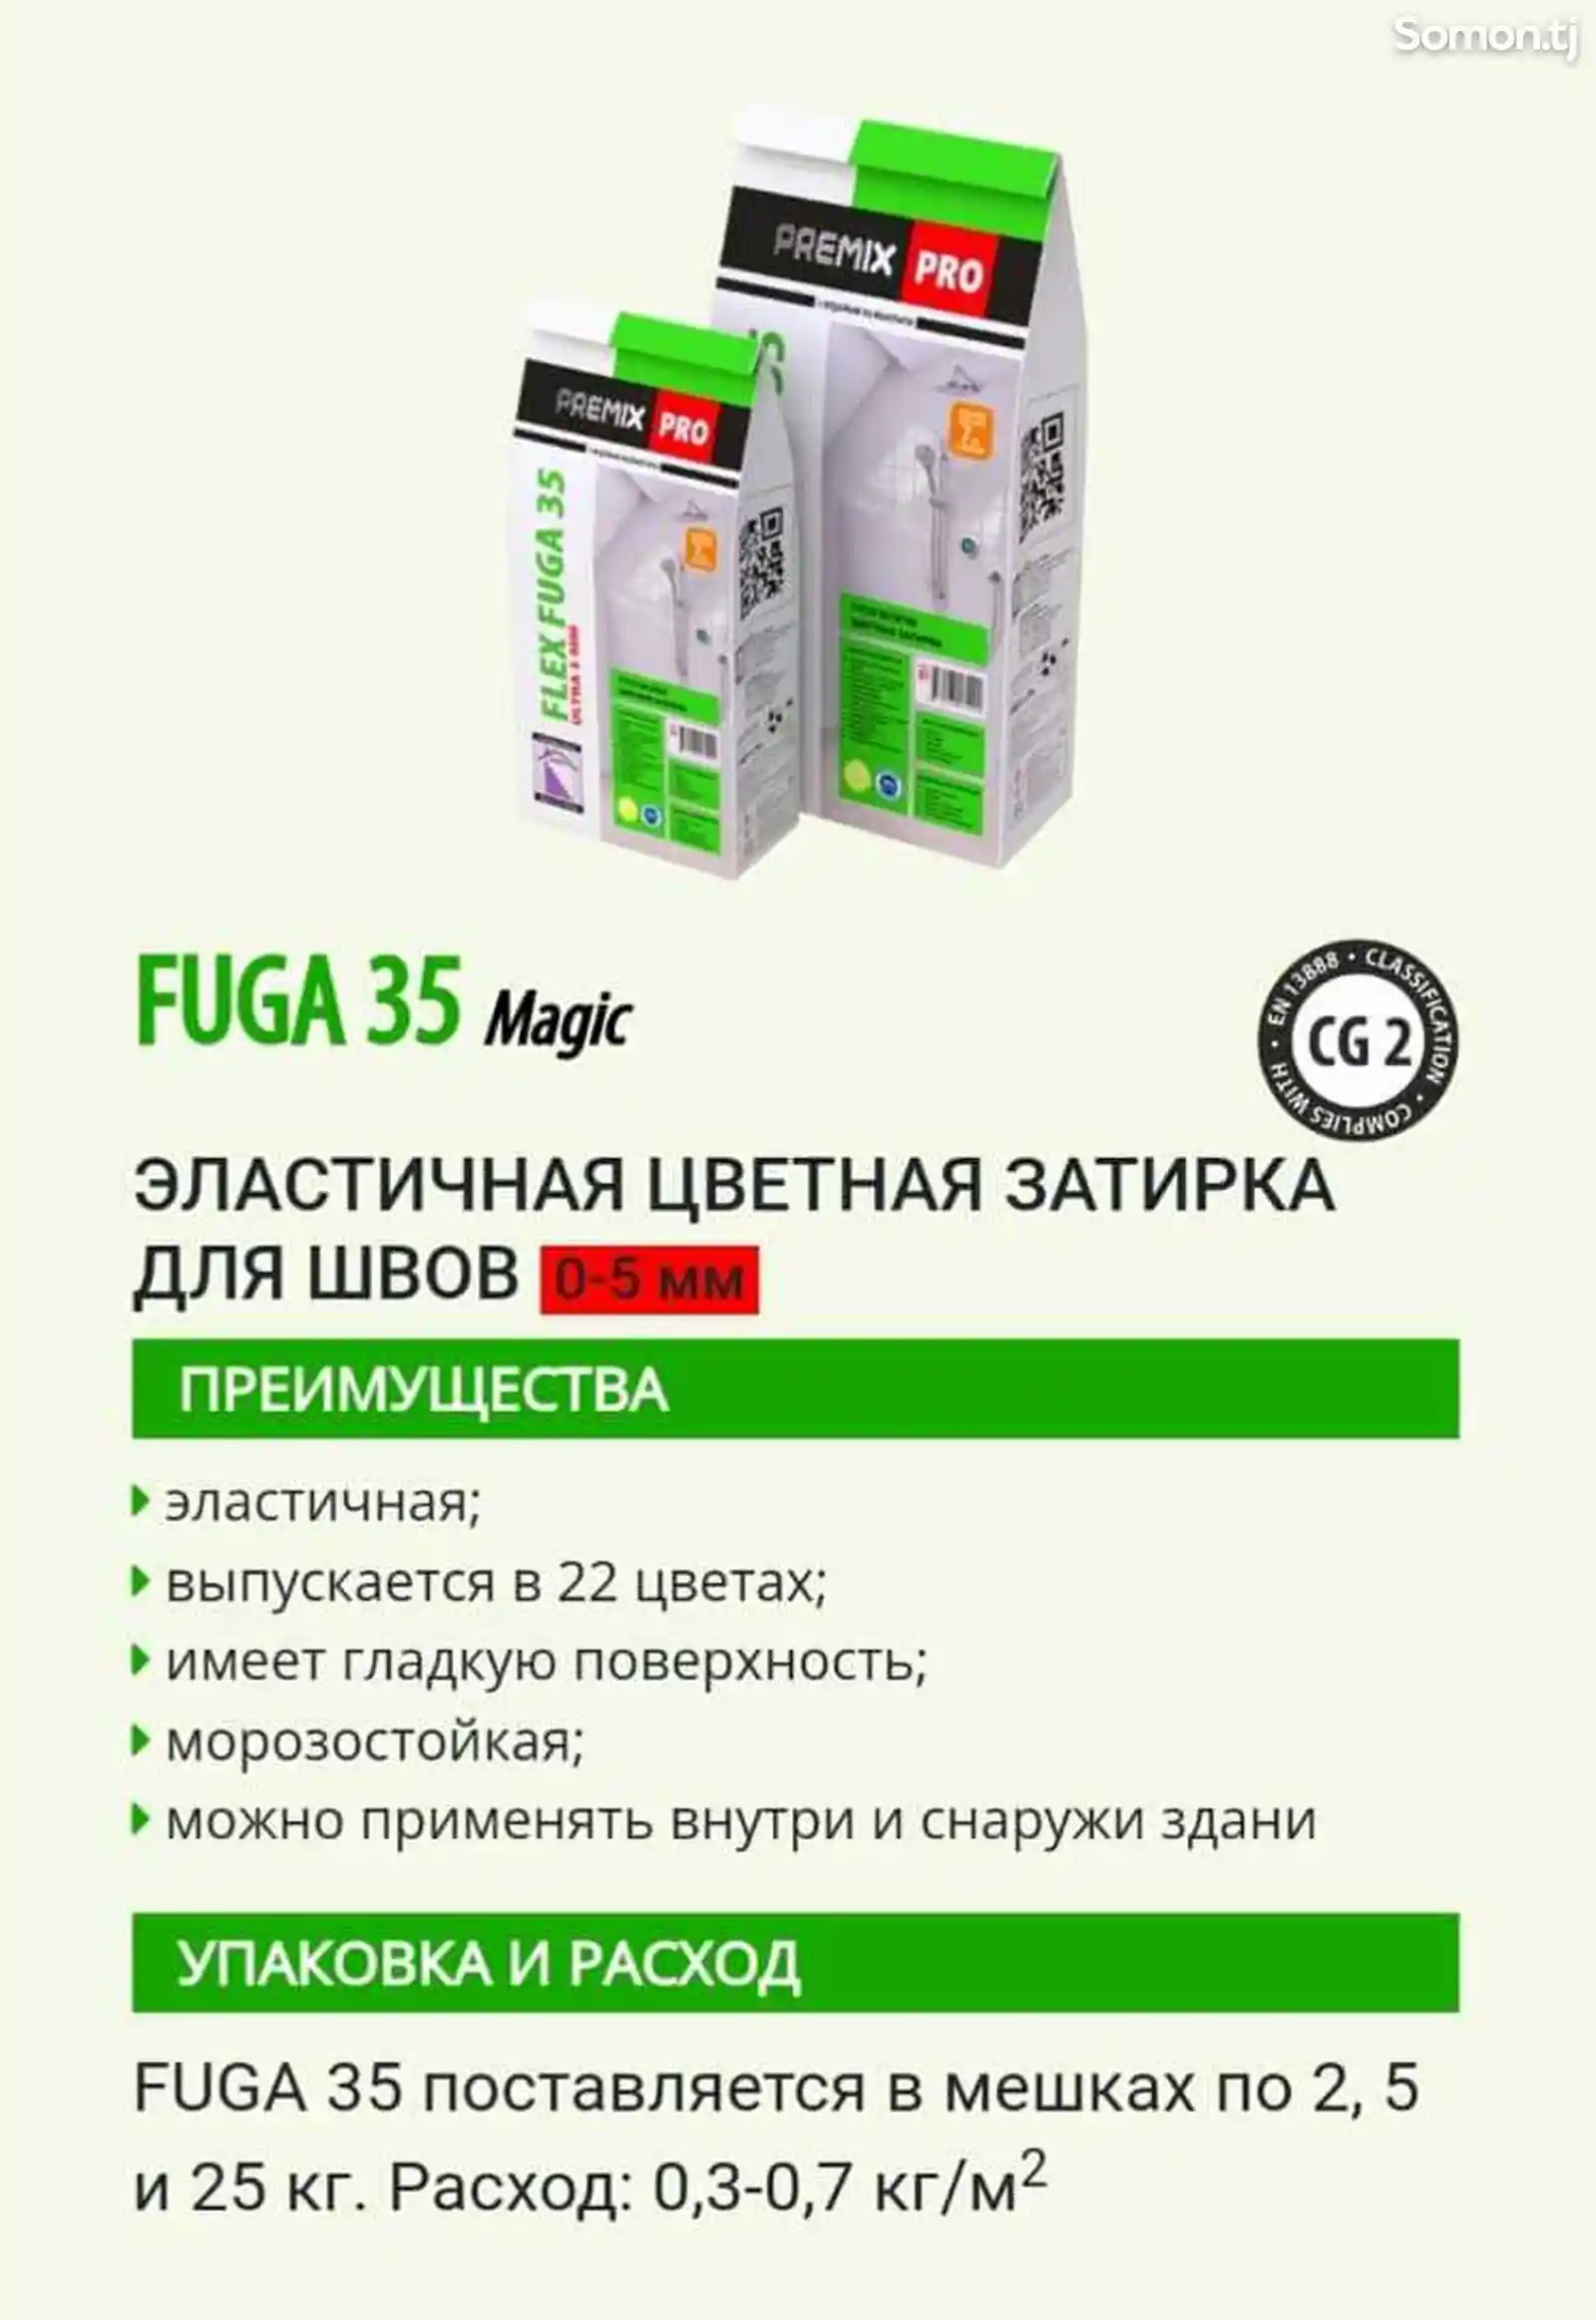 Эластичная цветная затирка Fuga 35, 1кг на заказ